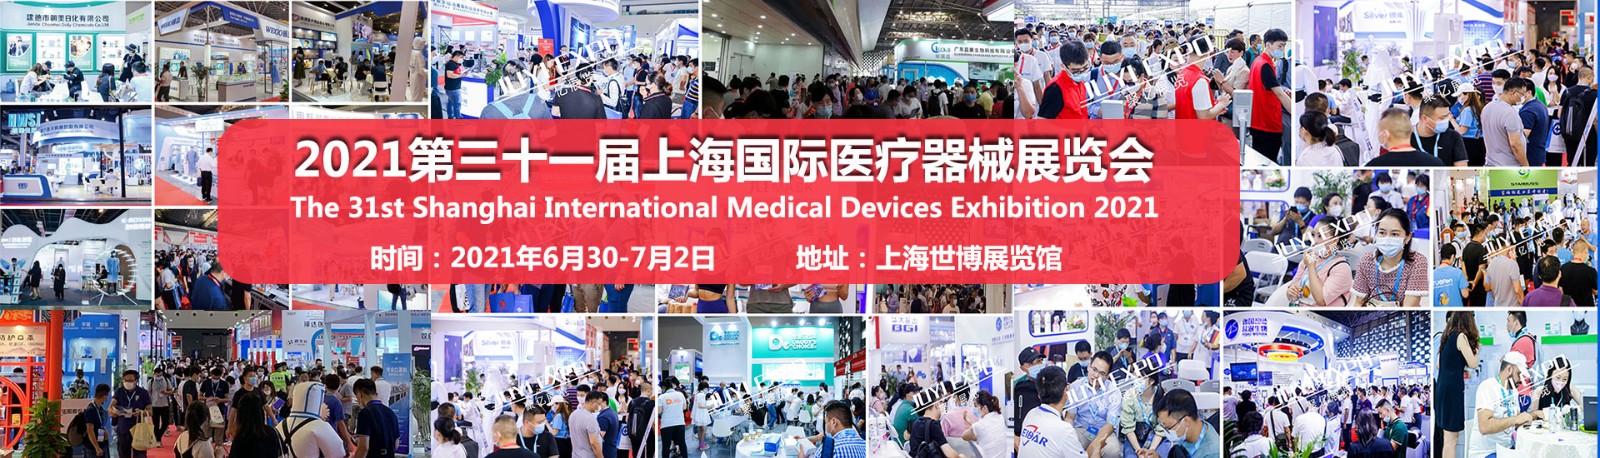 2021中国国际医疗器械展览会-上海医疗器械博览会